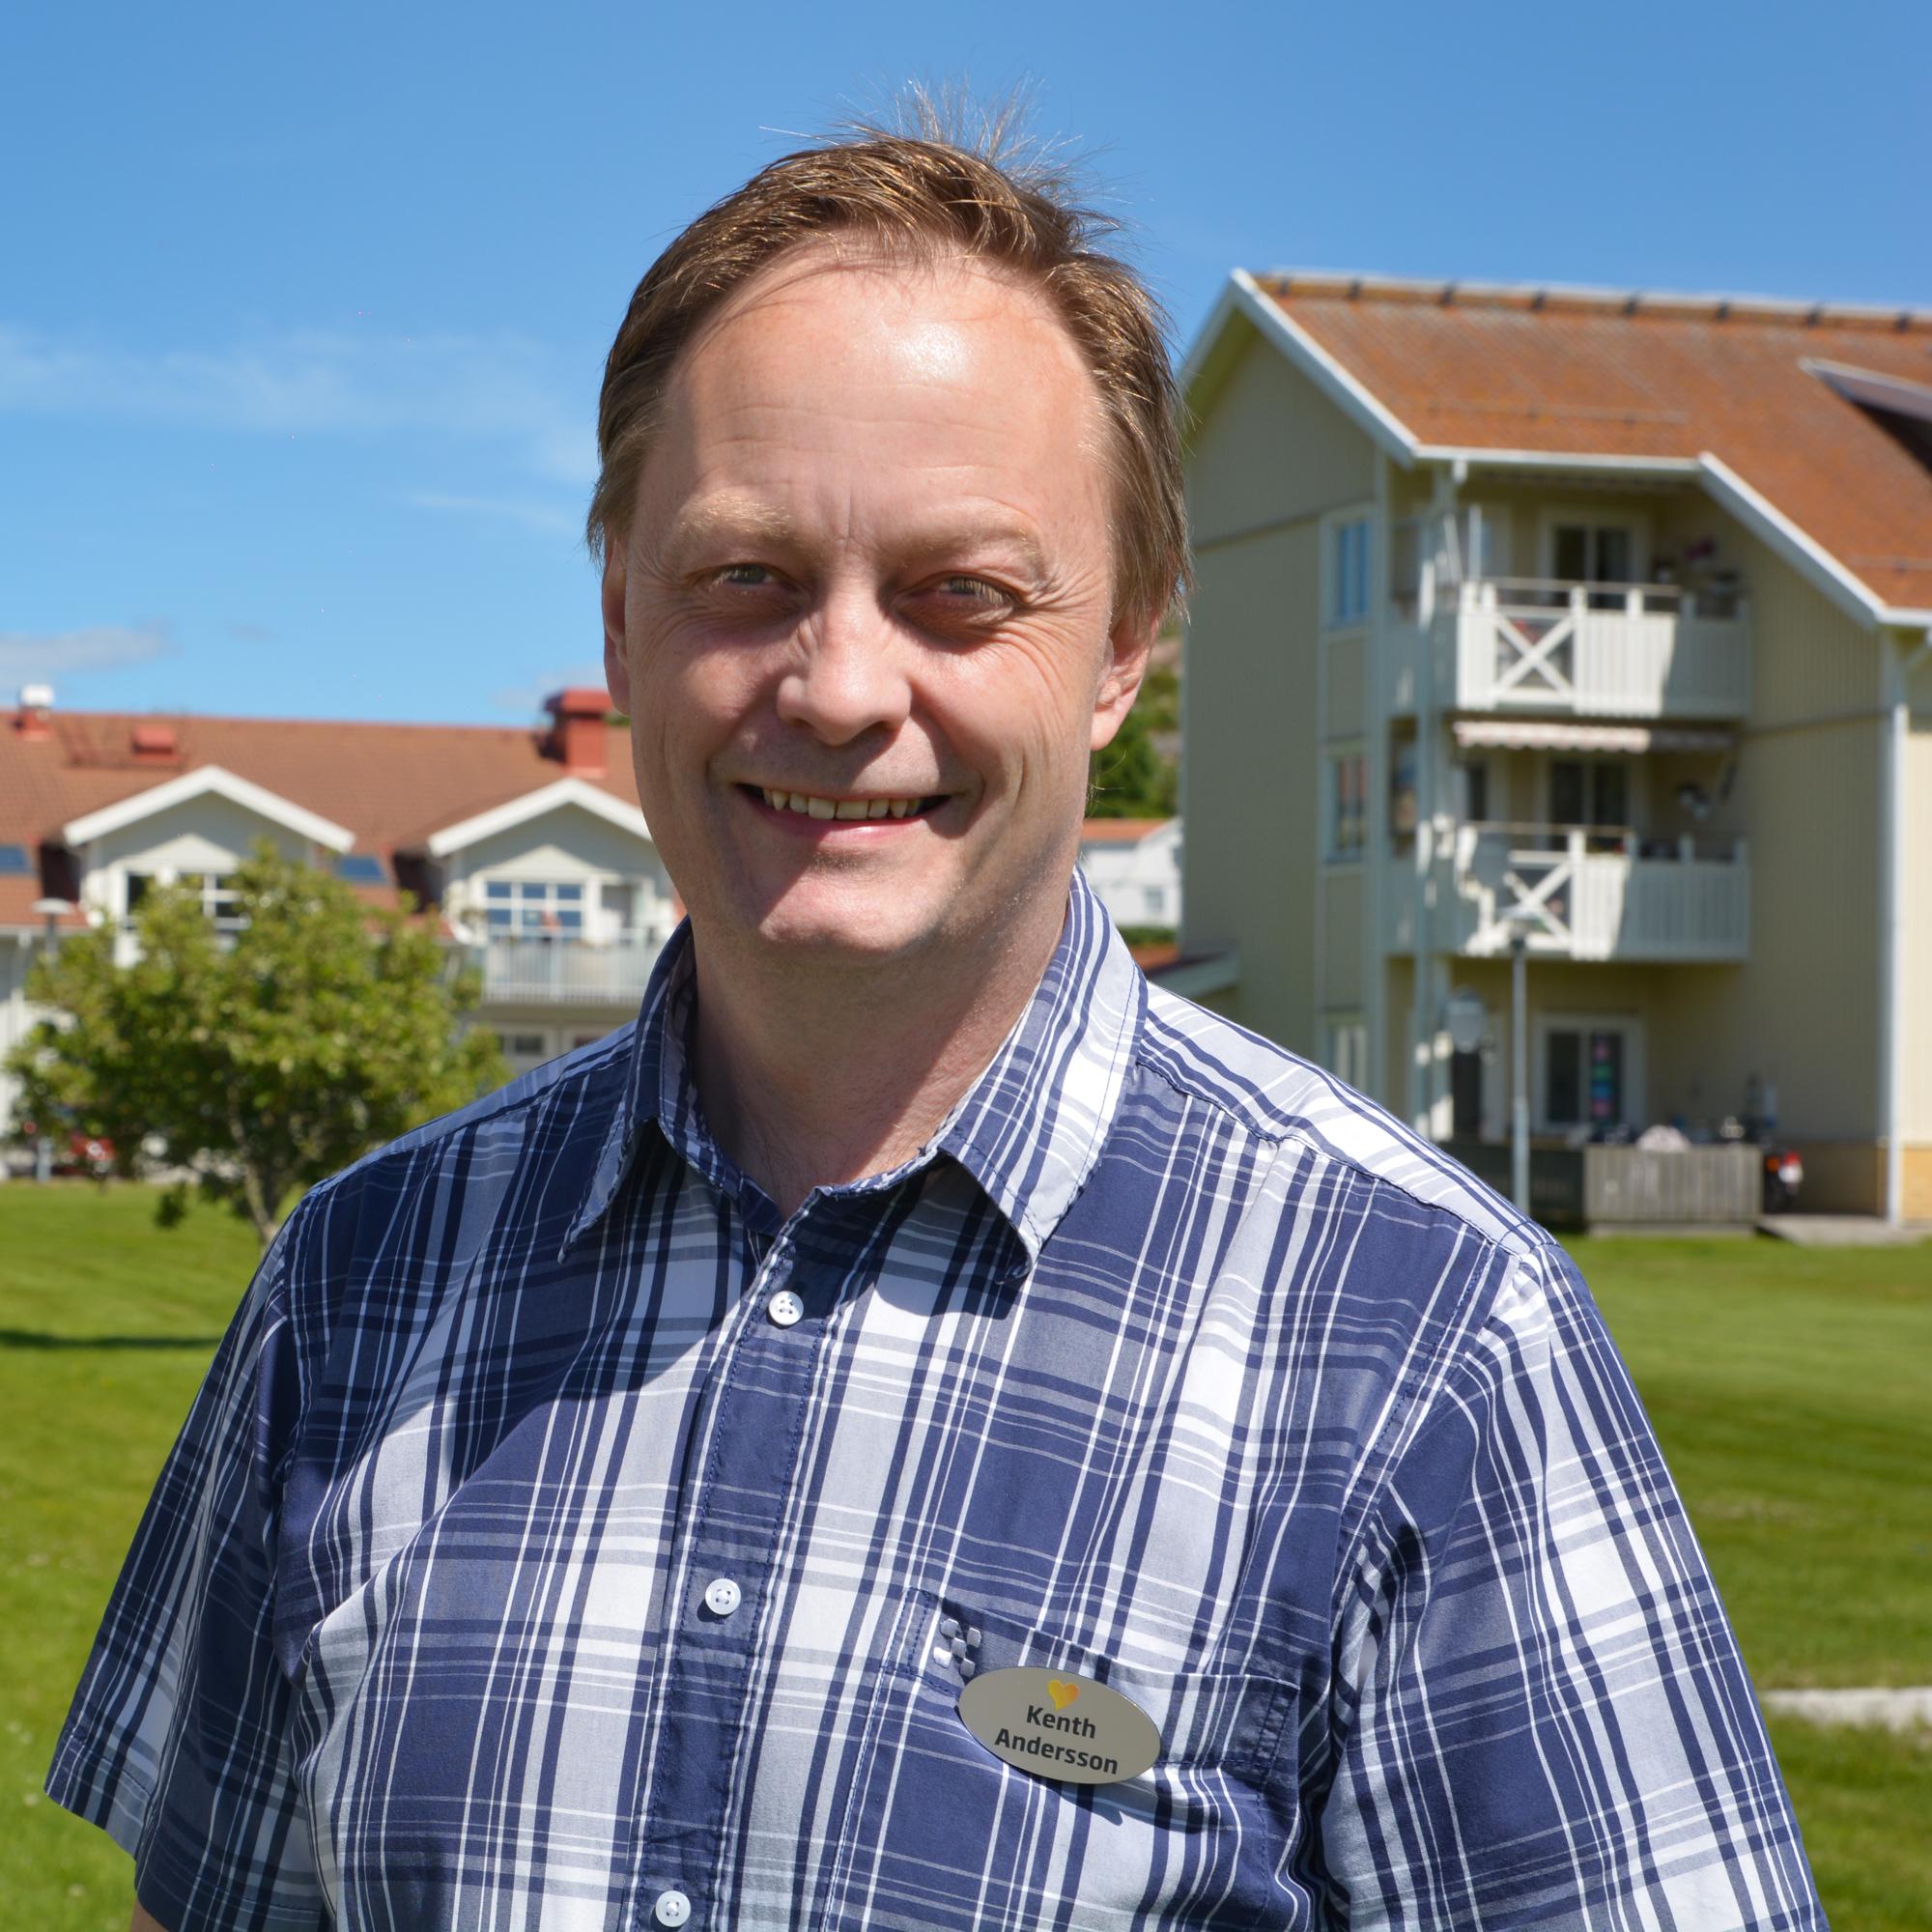 Kenth Andersson, privatrådgivare på Sparbanken Tanum